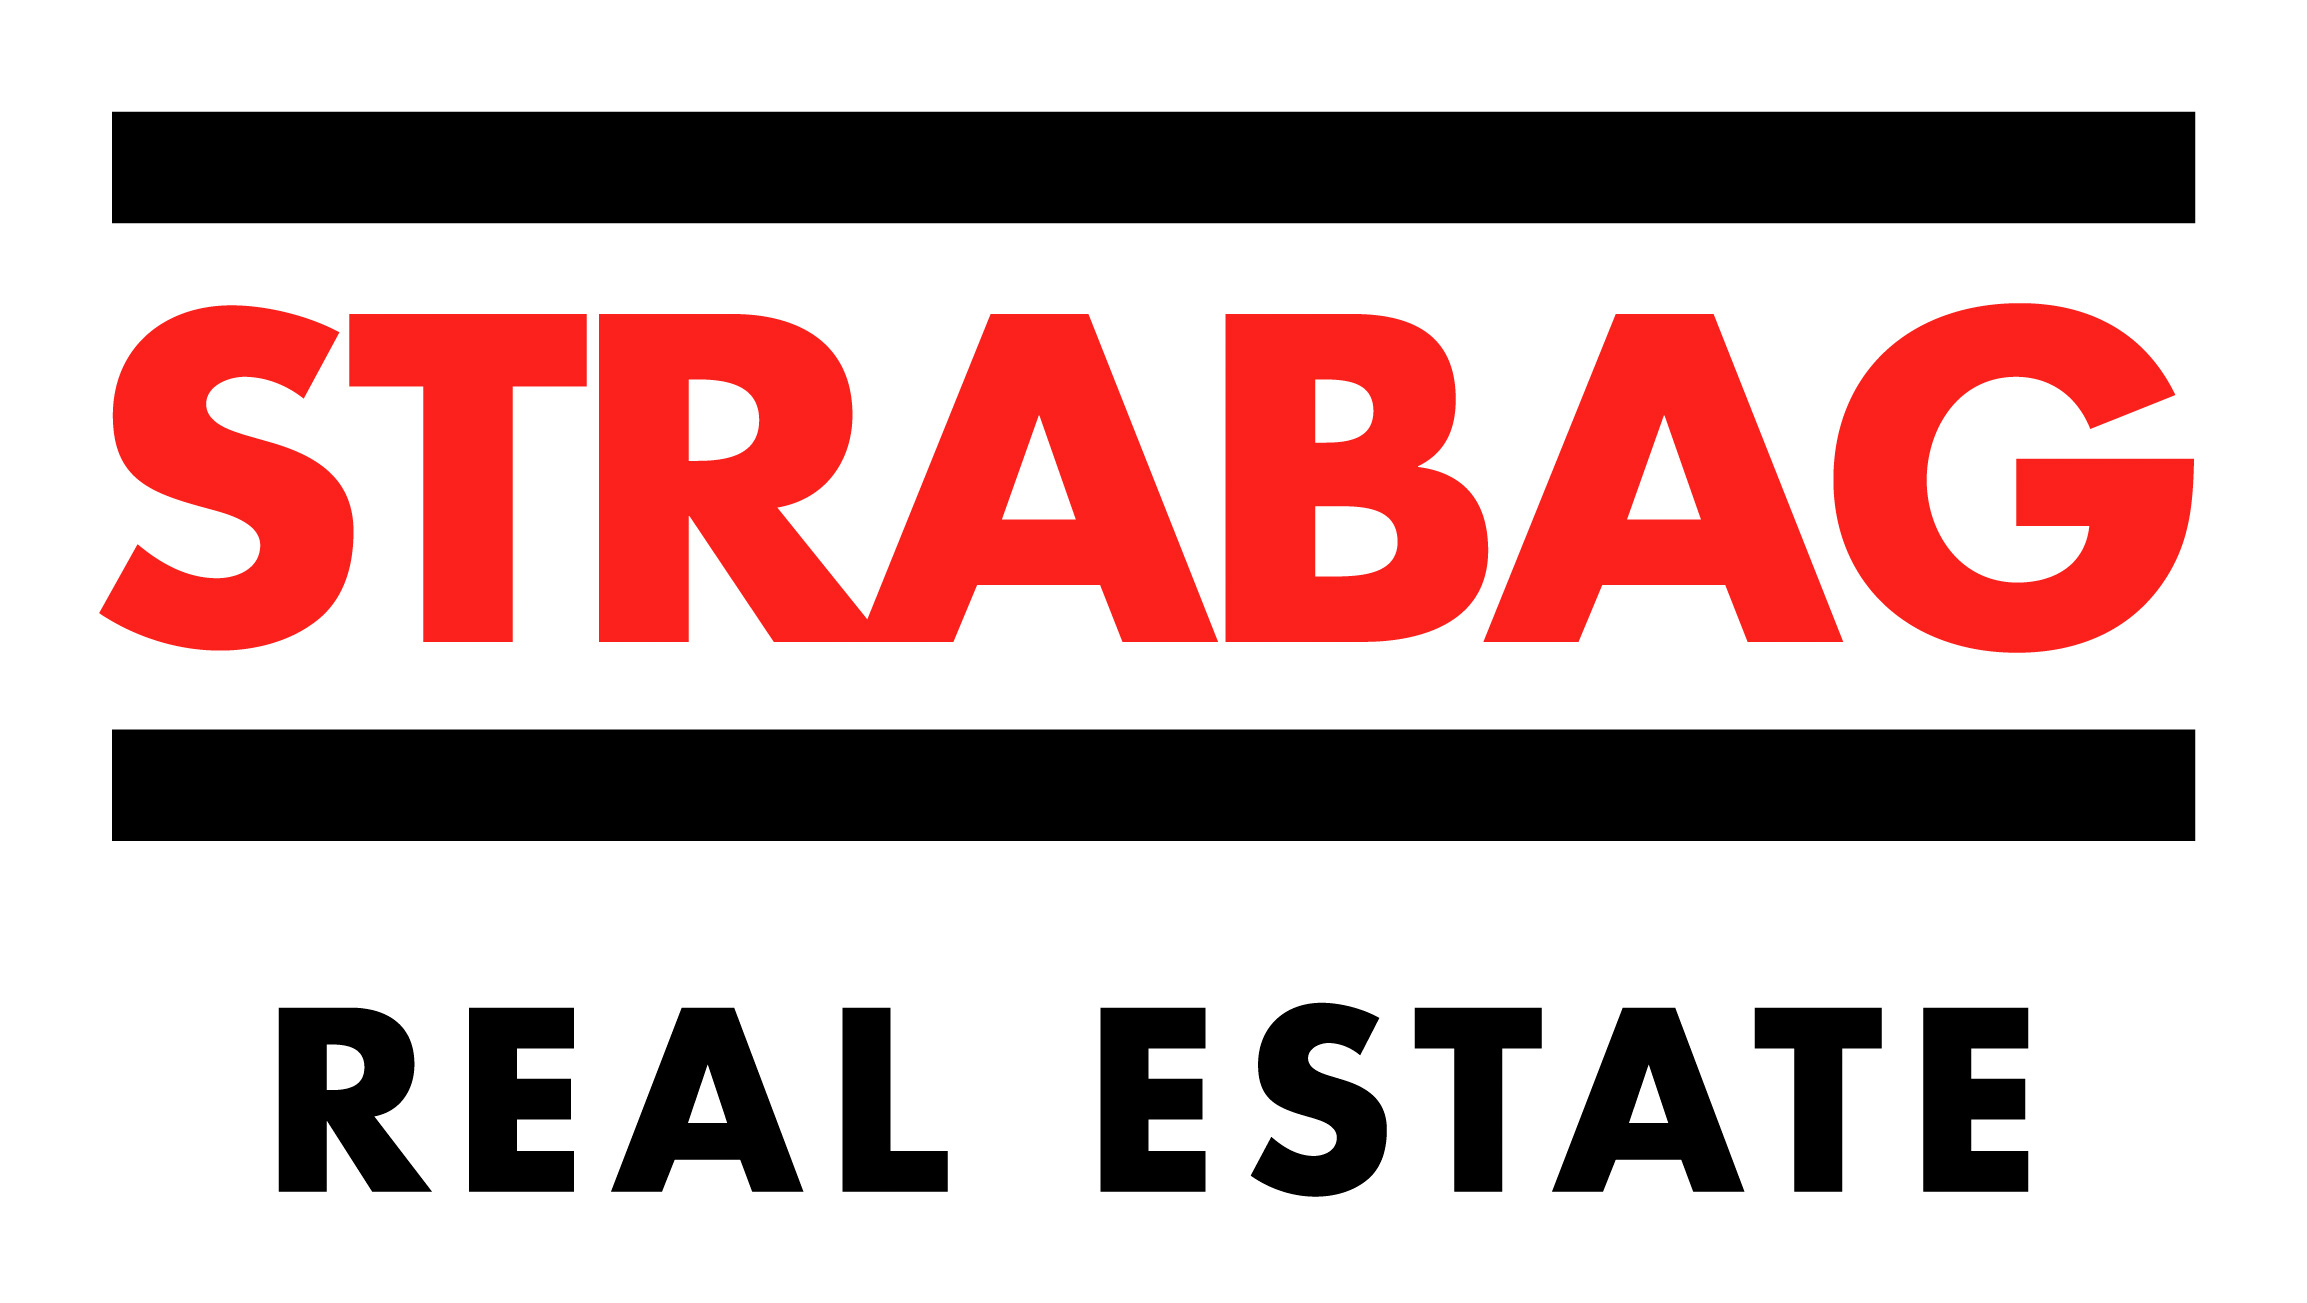 STRABAG Real Estate